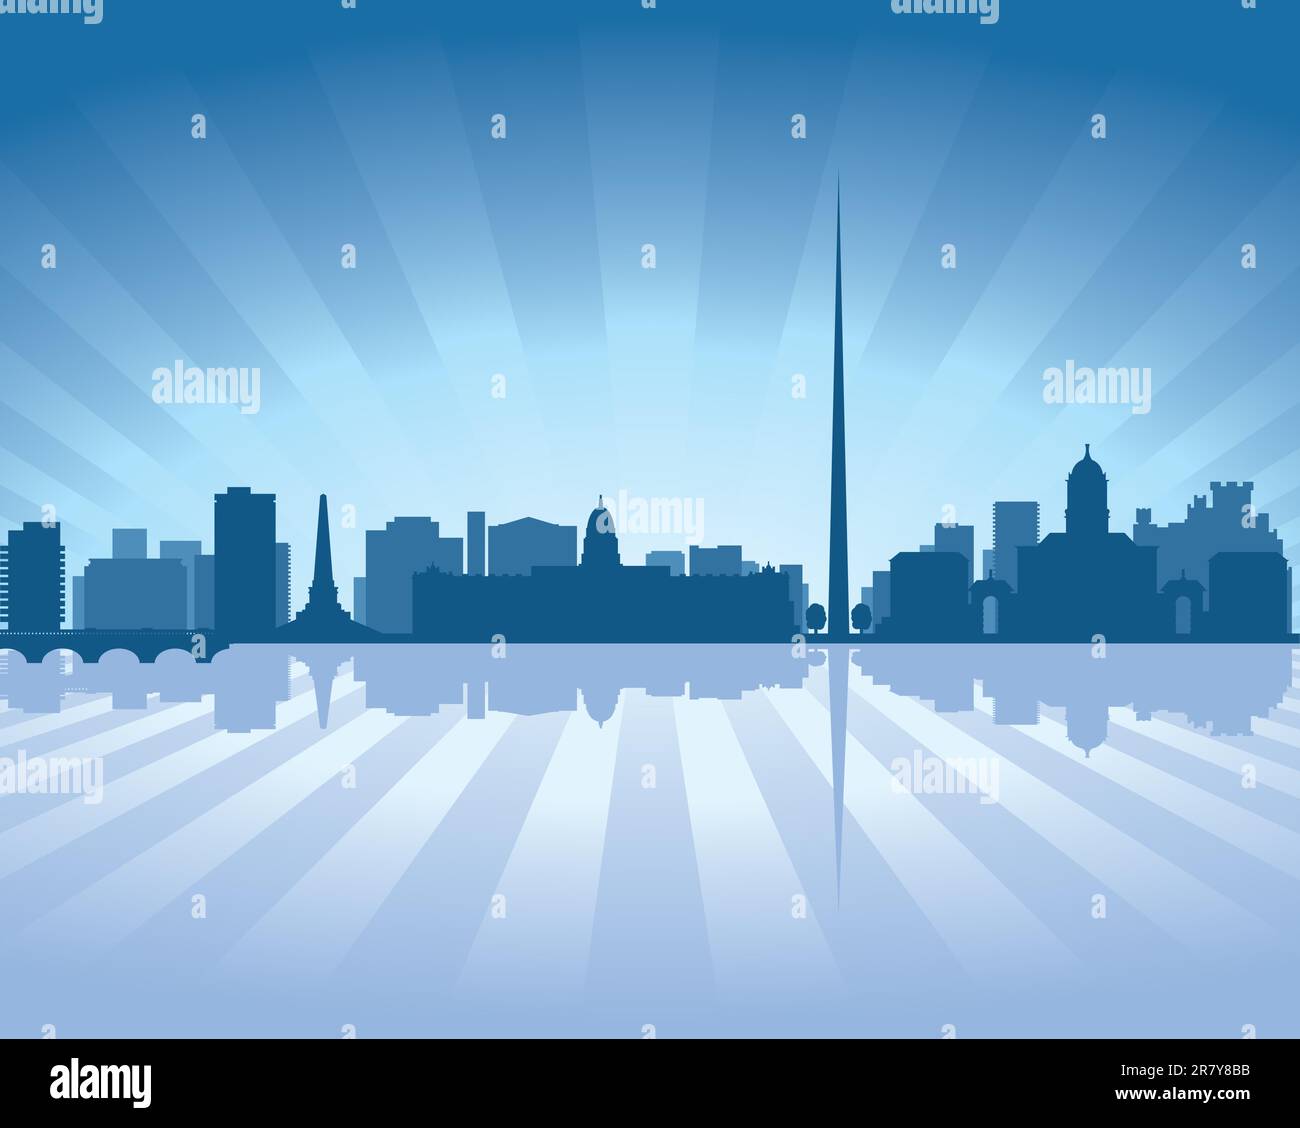 Dublin, Irland skyline Abbildung mit Reflexion im Wasser Stock Vektor